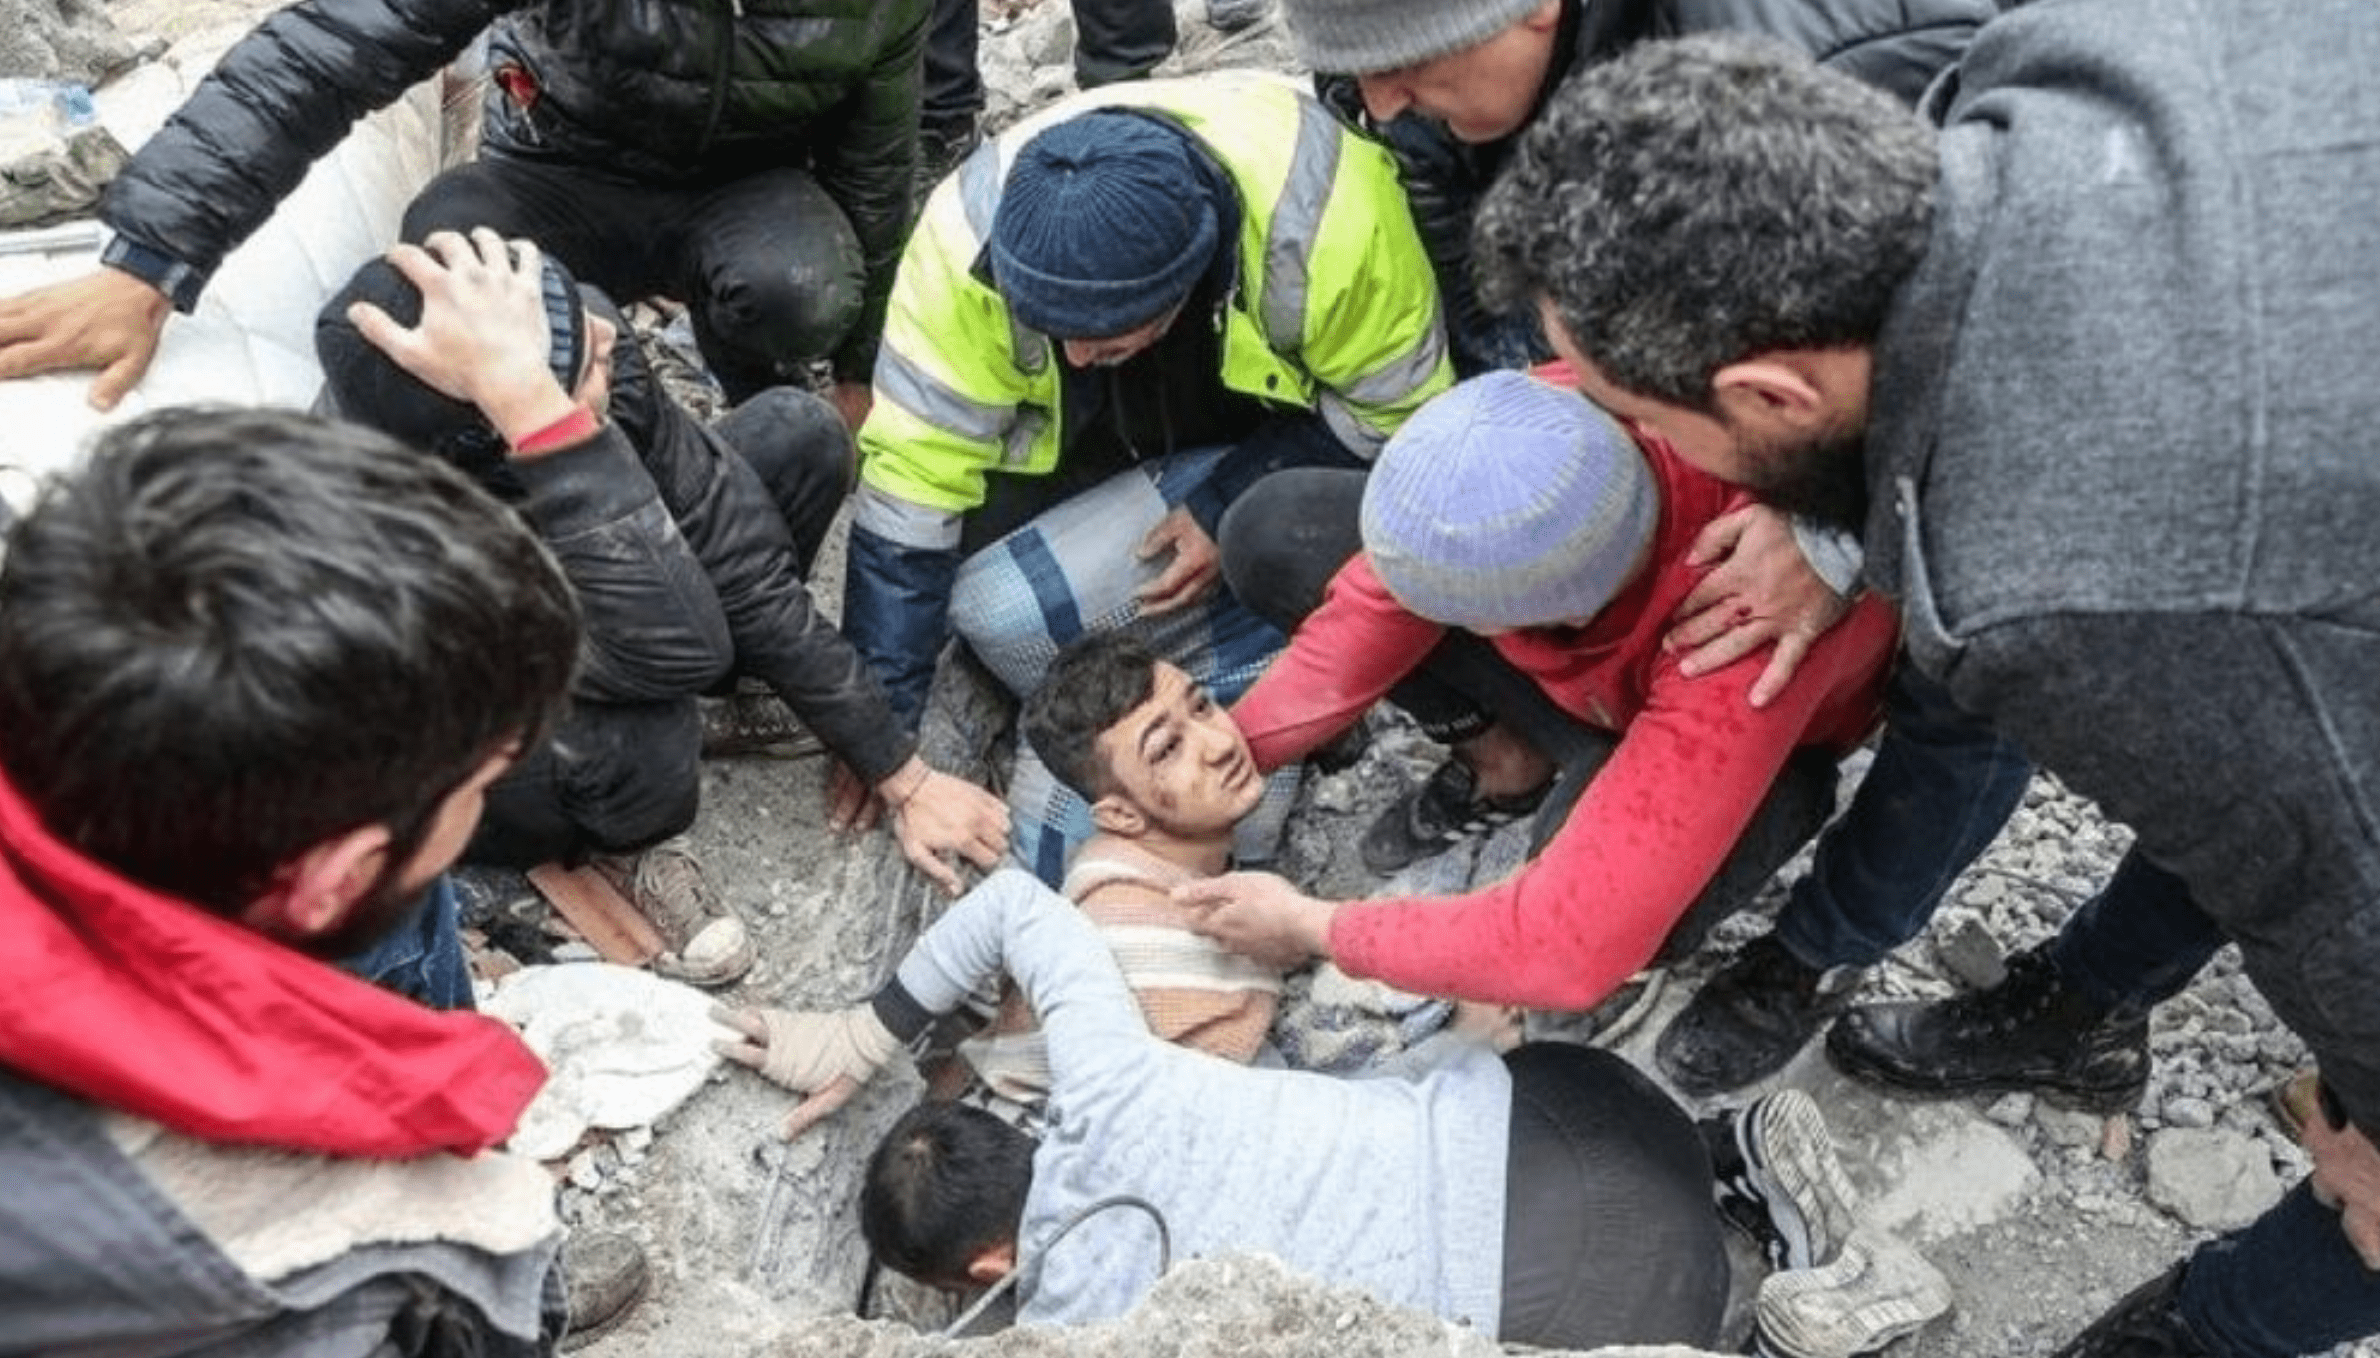 Một nạn nhân được đưa ra khỏi đống đổ nát sau vụ động đất tại Thổ Nhĩ Kỳ. Ảnh: Turkeyalaan.